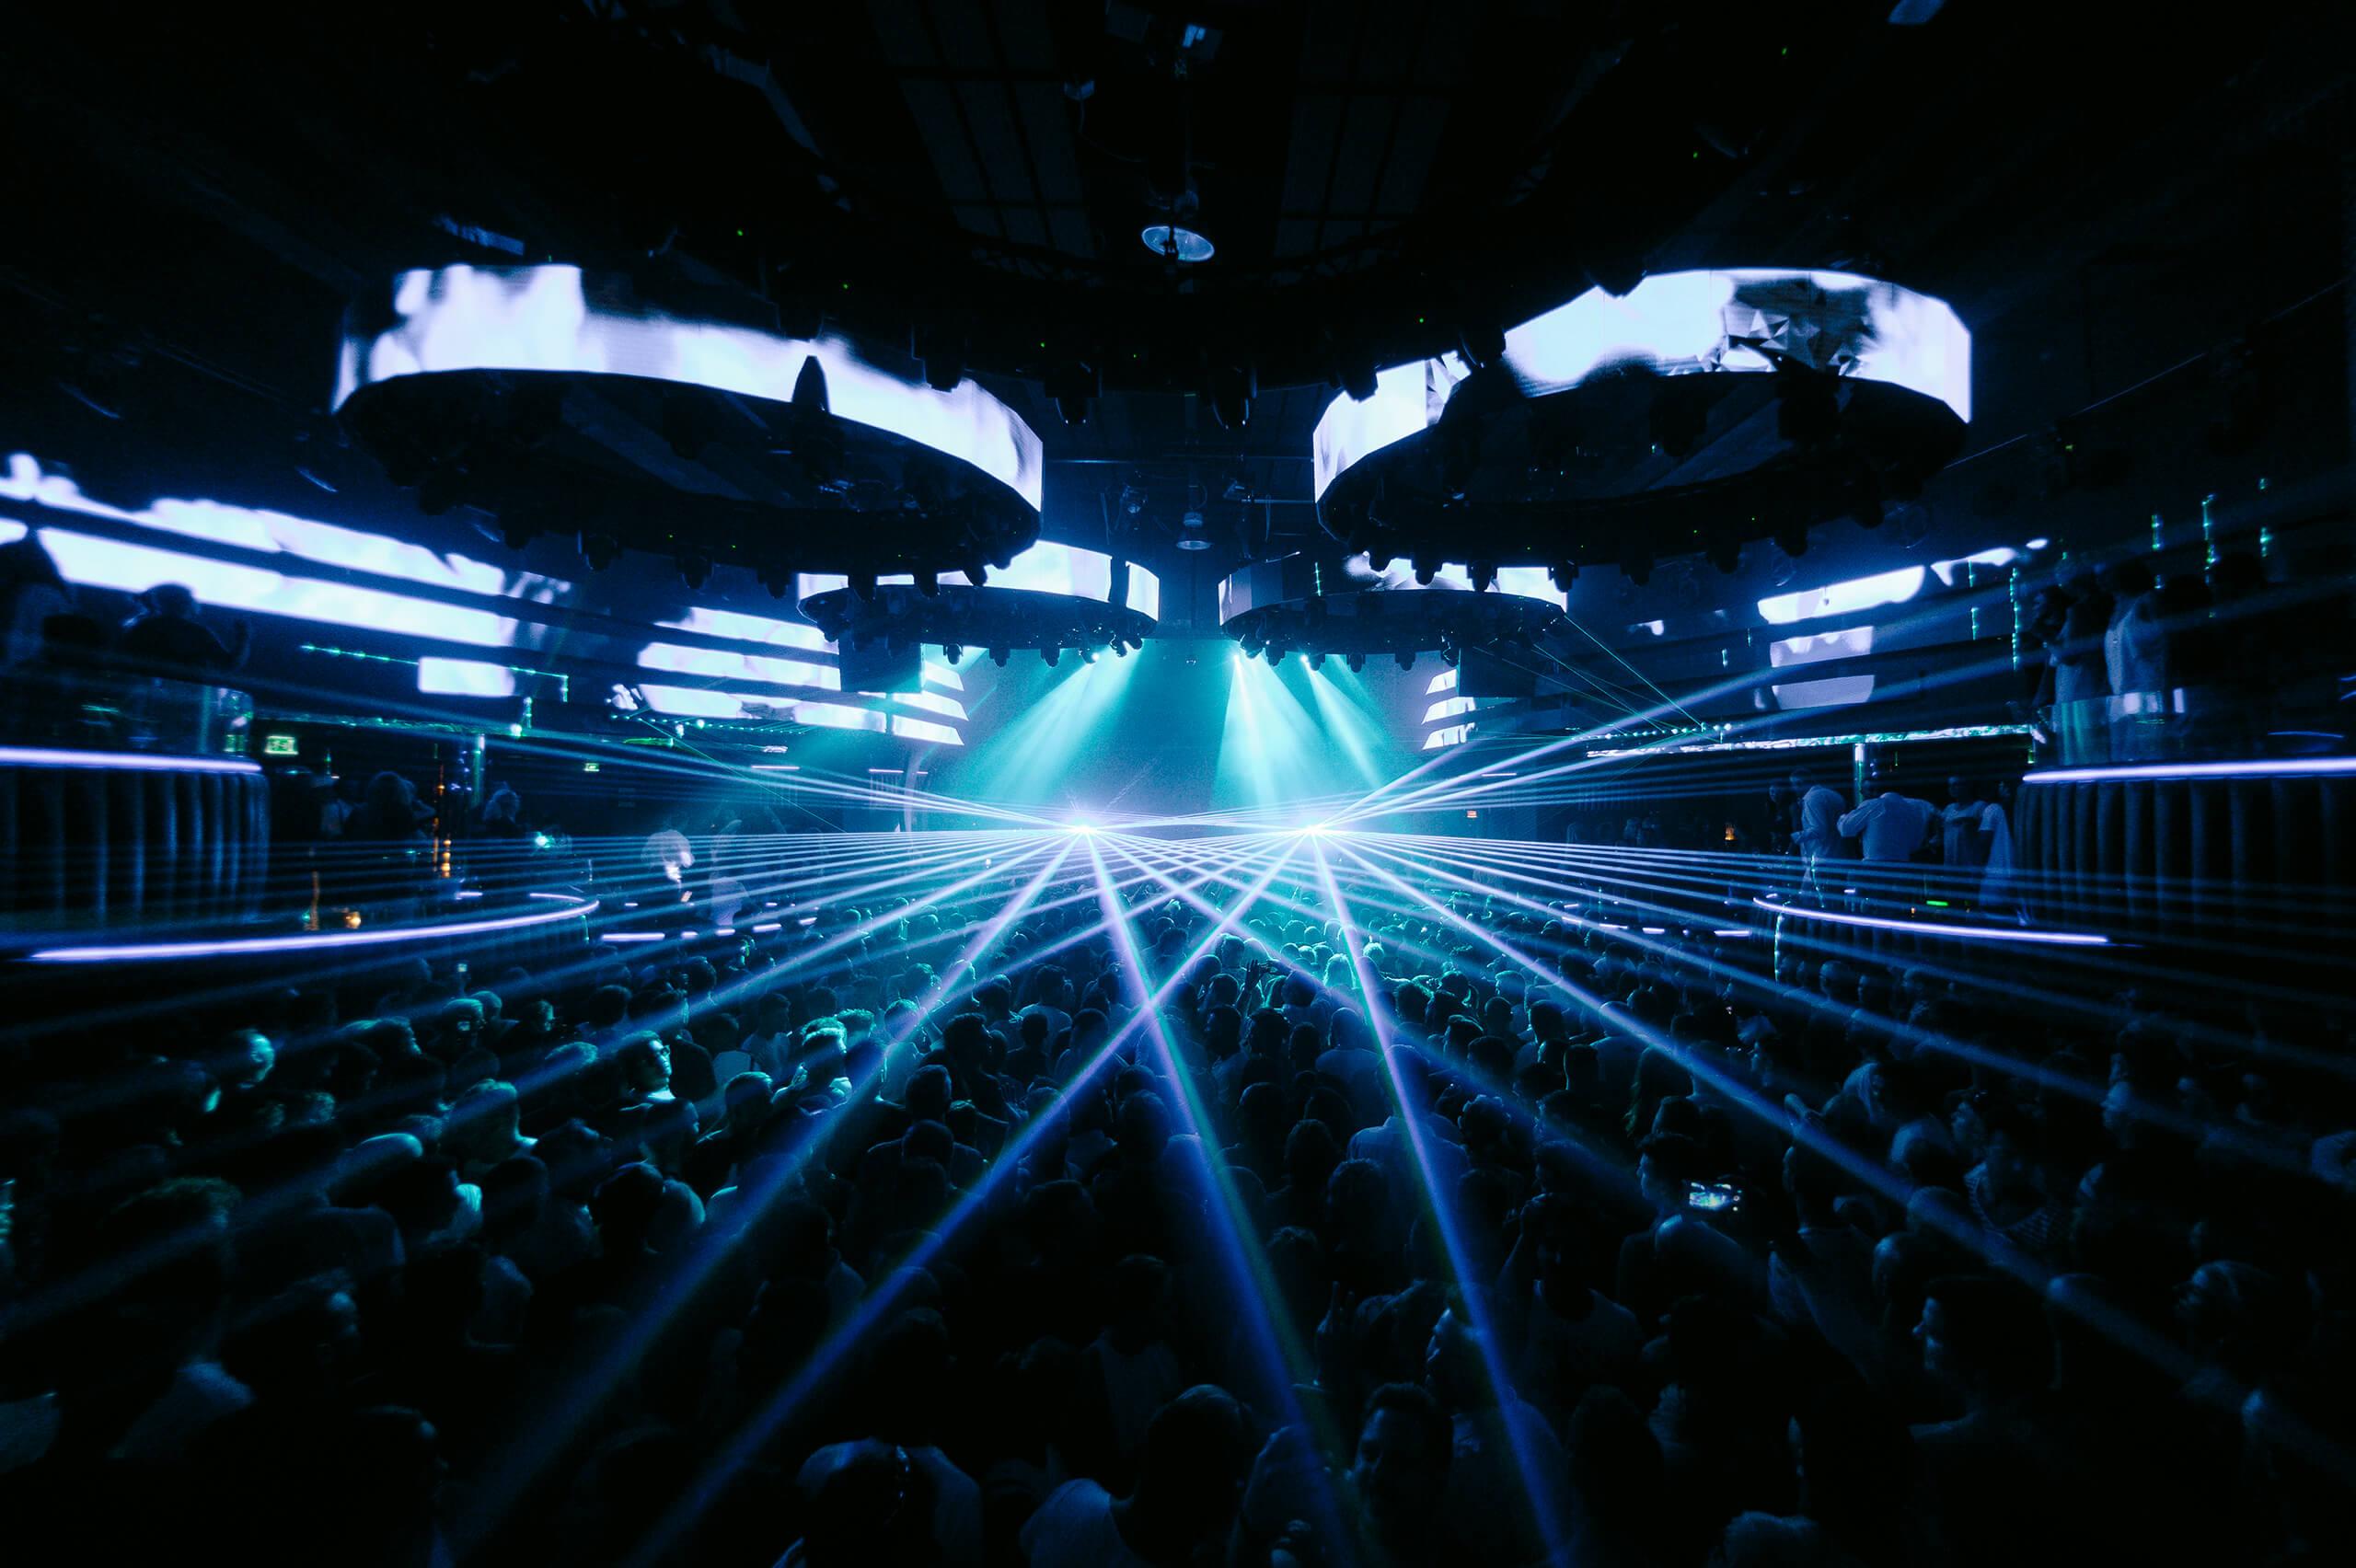 Hï Ibiza признан клубом №1 в мире по результатам рейтинга DJ Mag's Top 100 Clubs